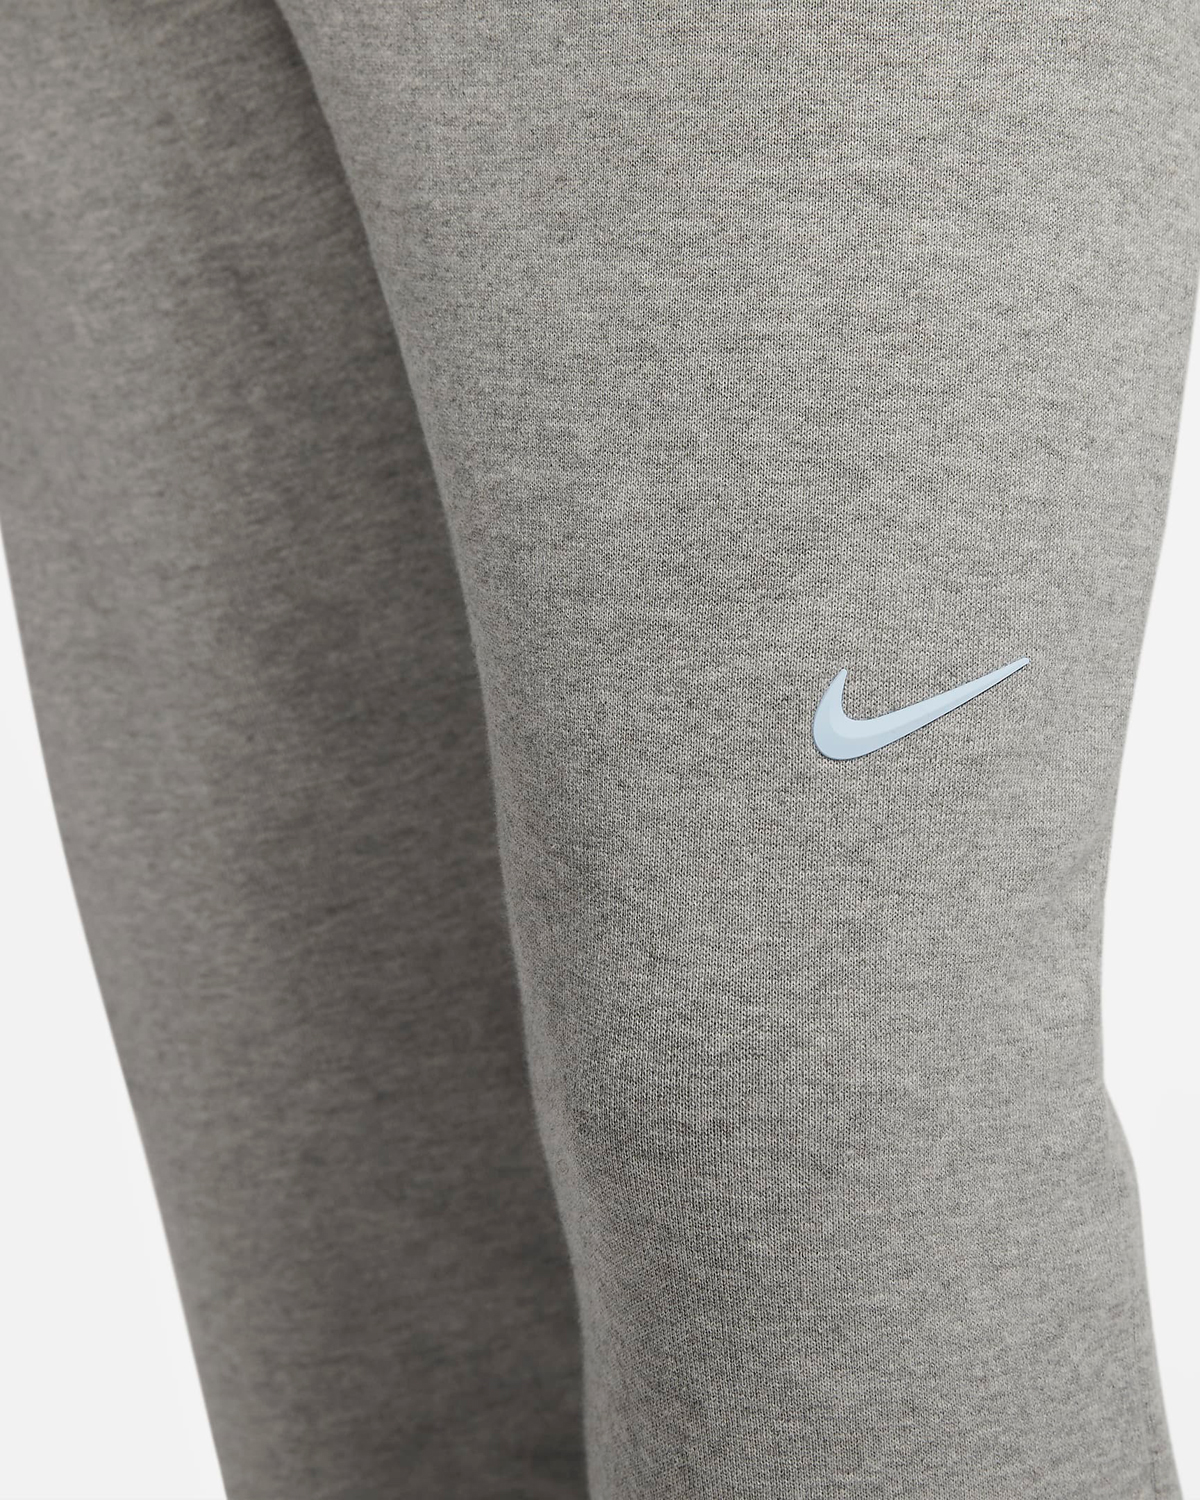 Drake-NOCTA-Nike-Pants-Grey-2